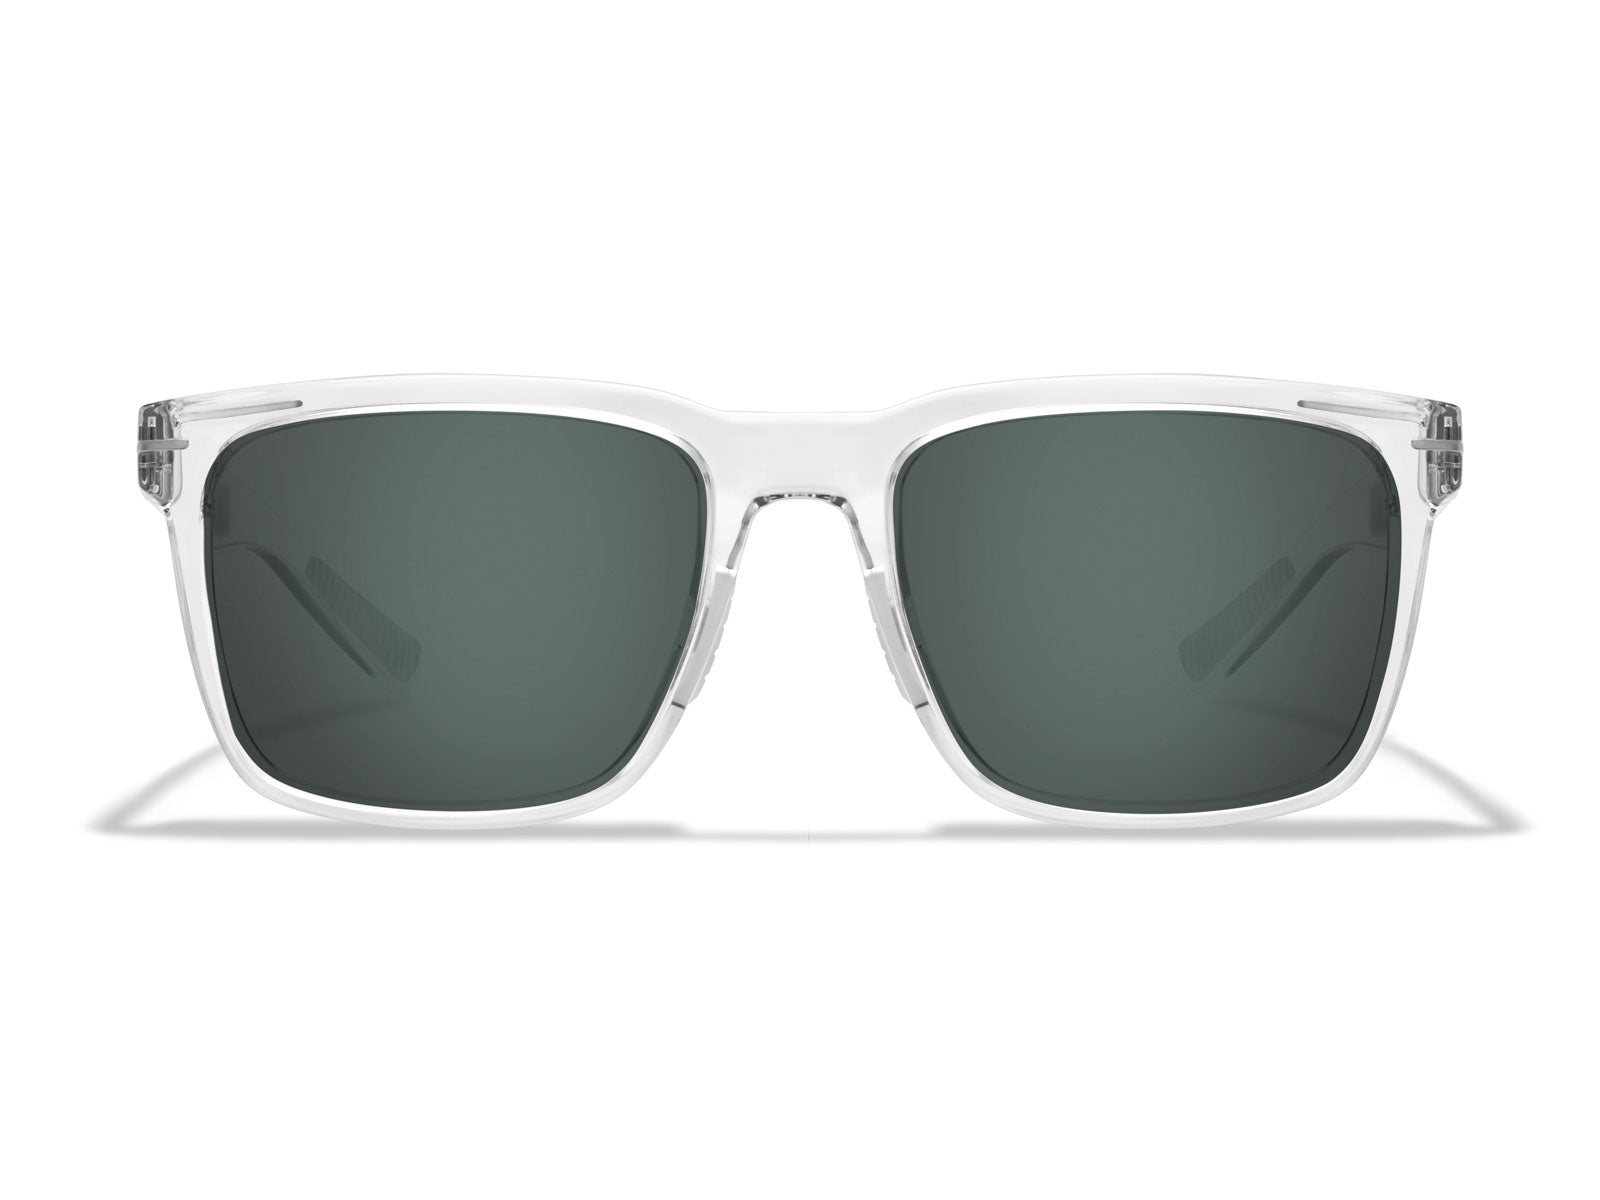 Transparent gray blue small frame square sunglasses and sunglasses